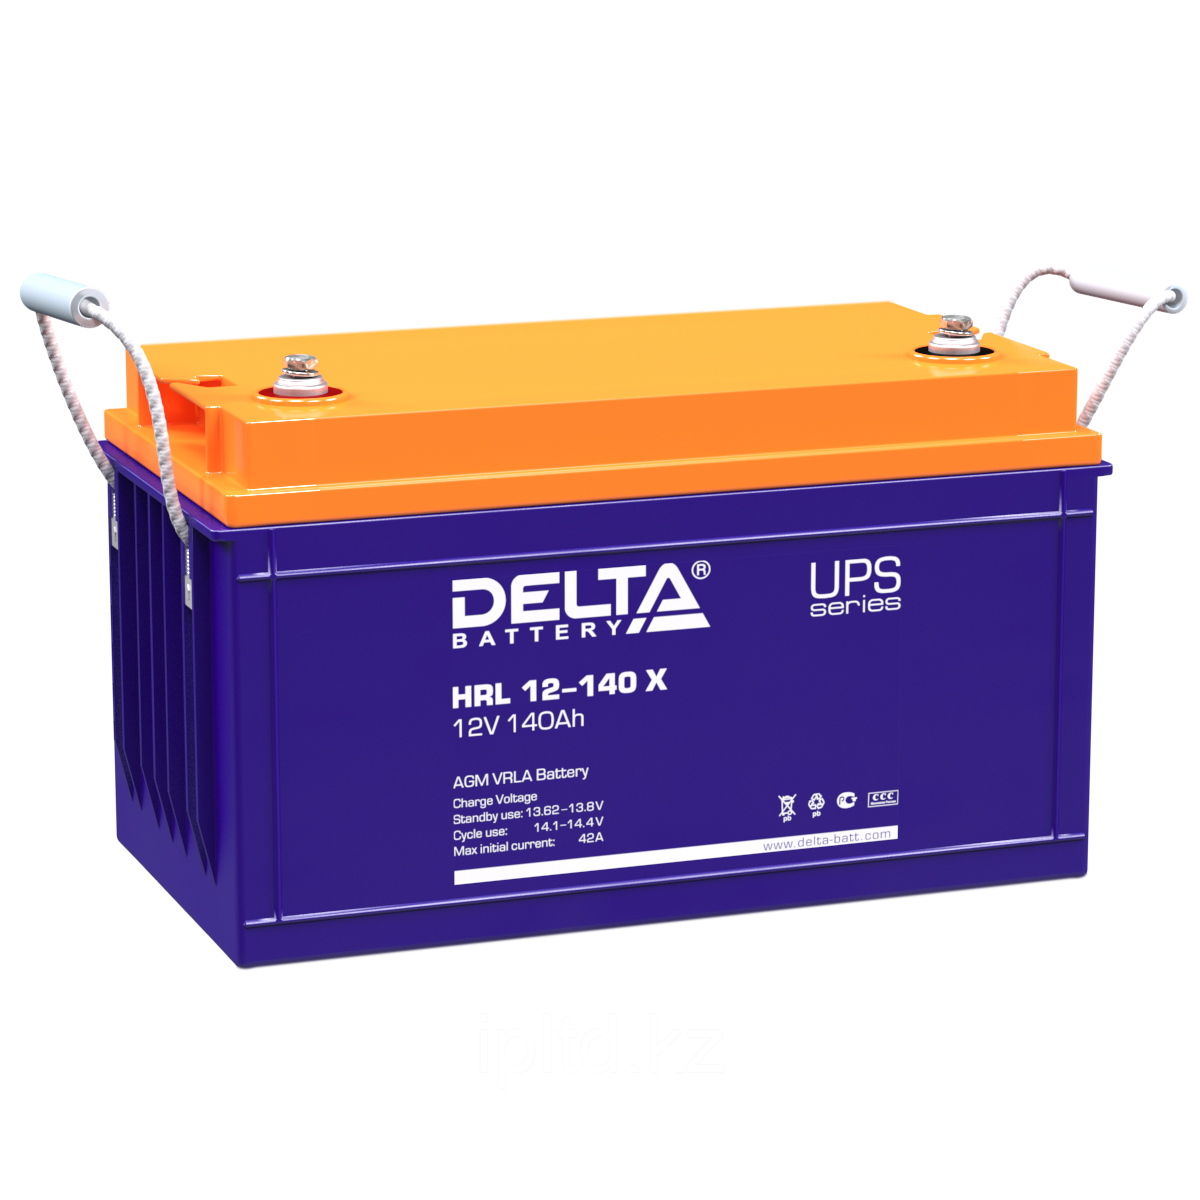 Аккумулятор Delta HRL 12-140 X (12V / 140Ah)